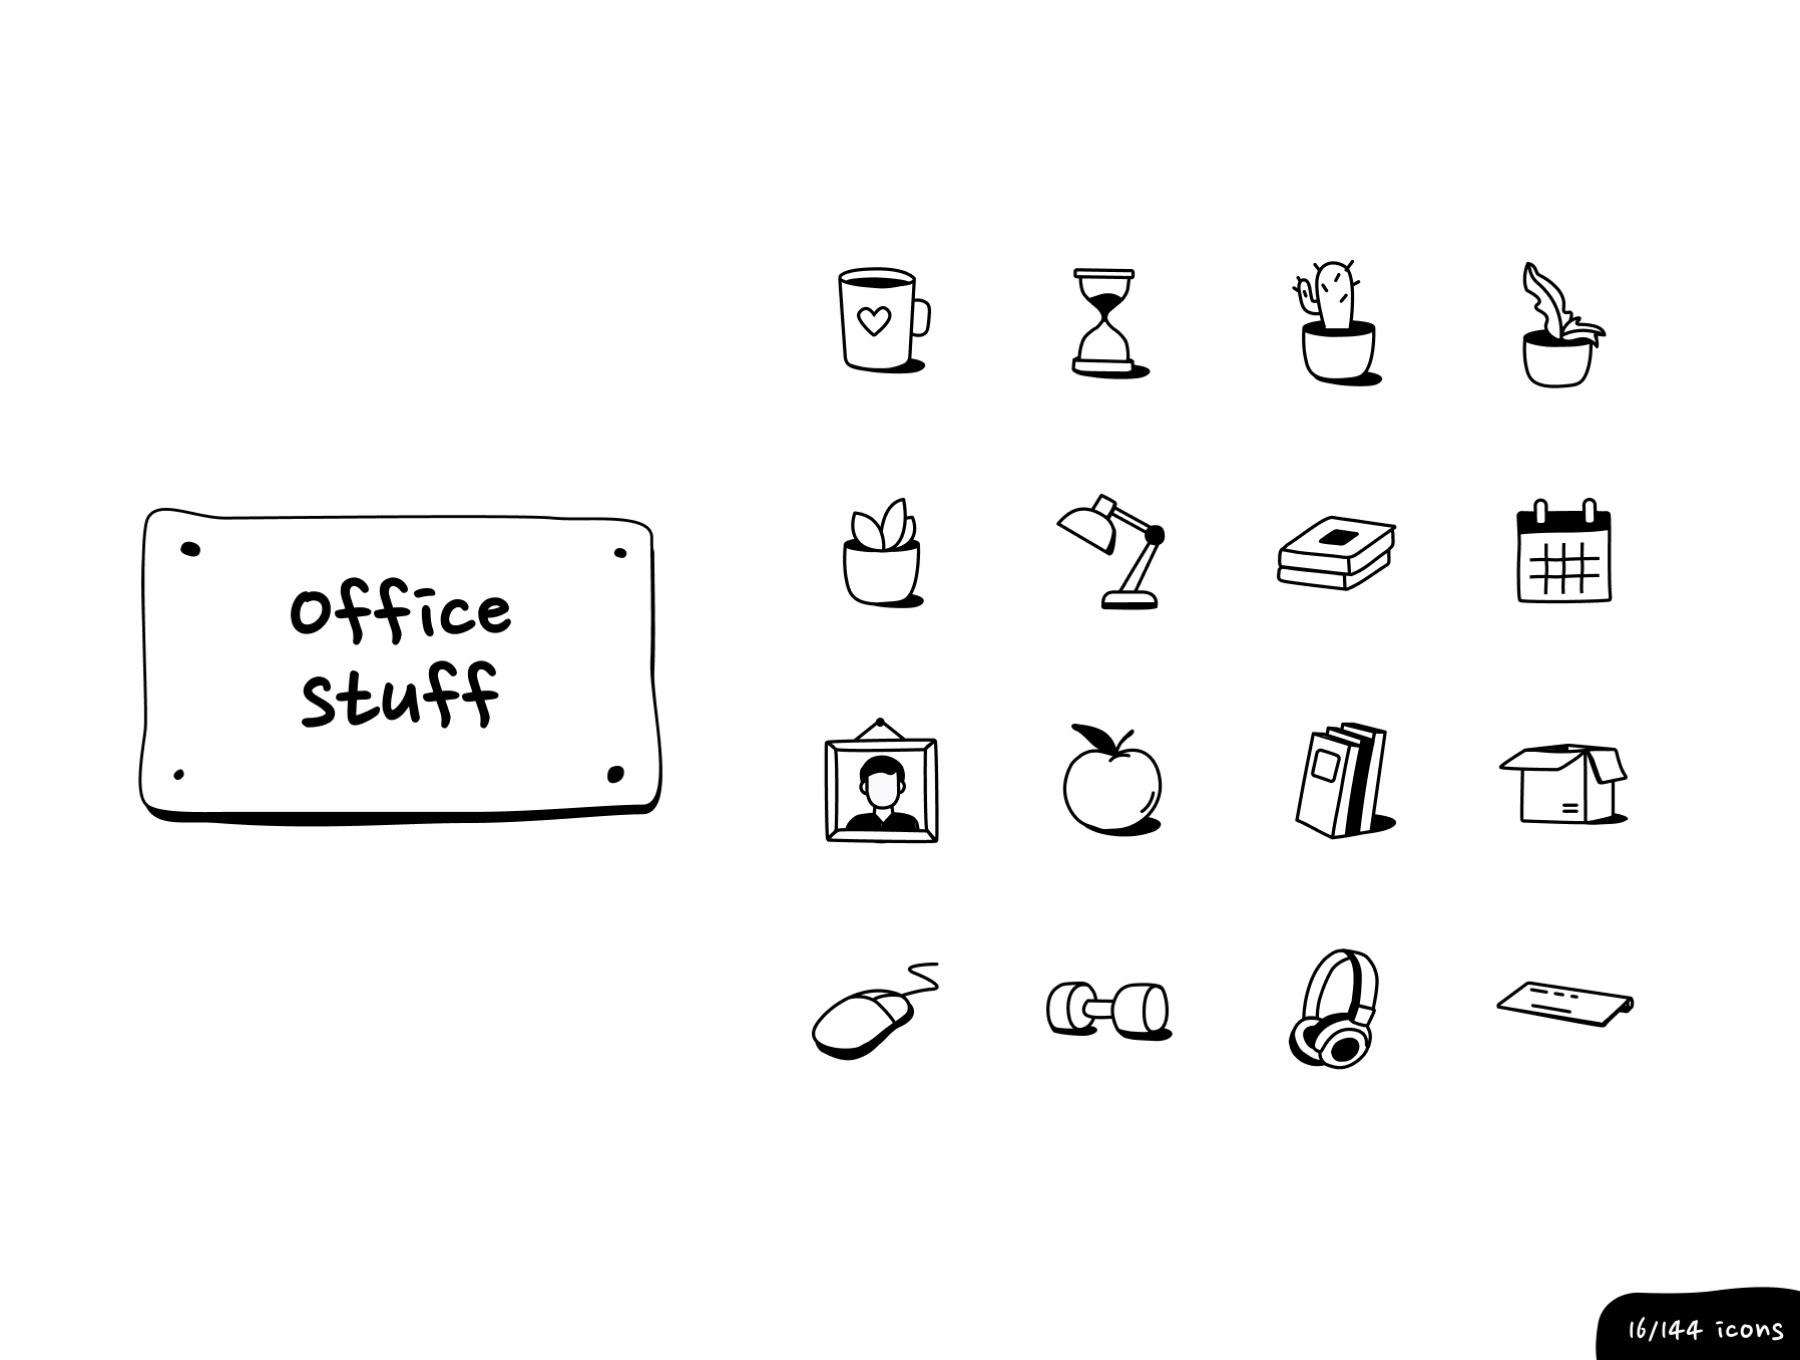 办公室 - 墨水图标套装 Office - Inking Icon Set sketch, figma格式-3D/图标-到位啦UI